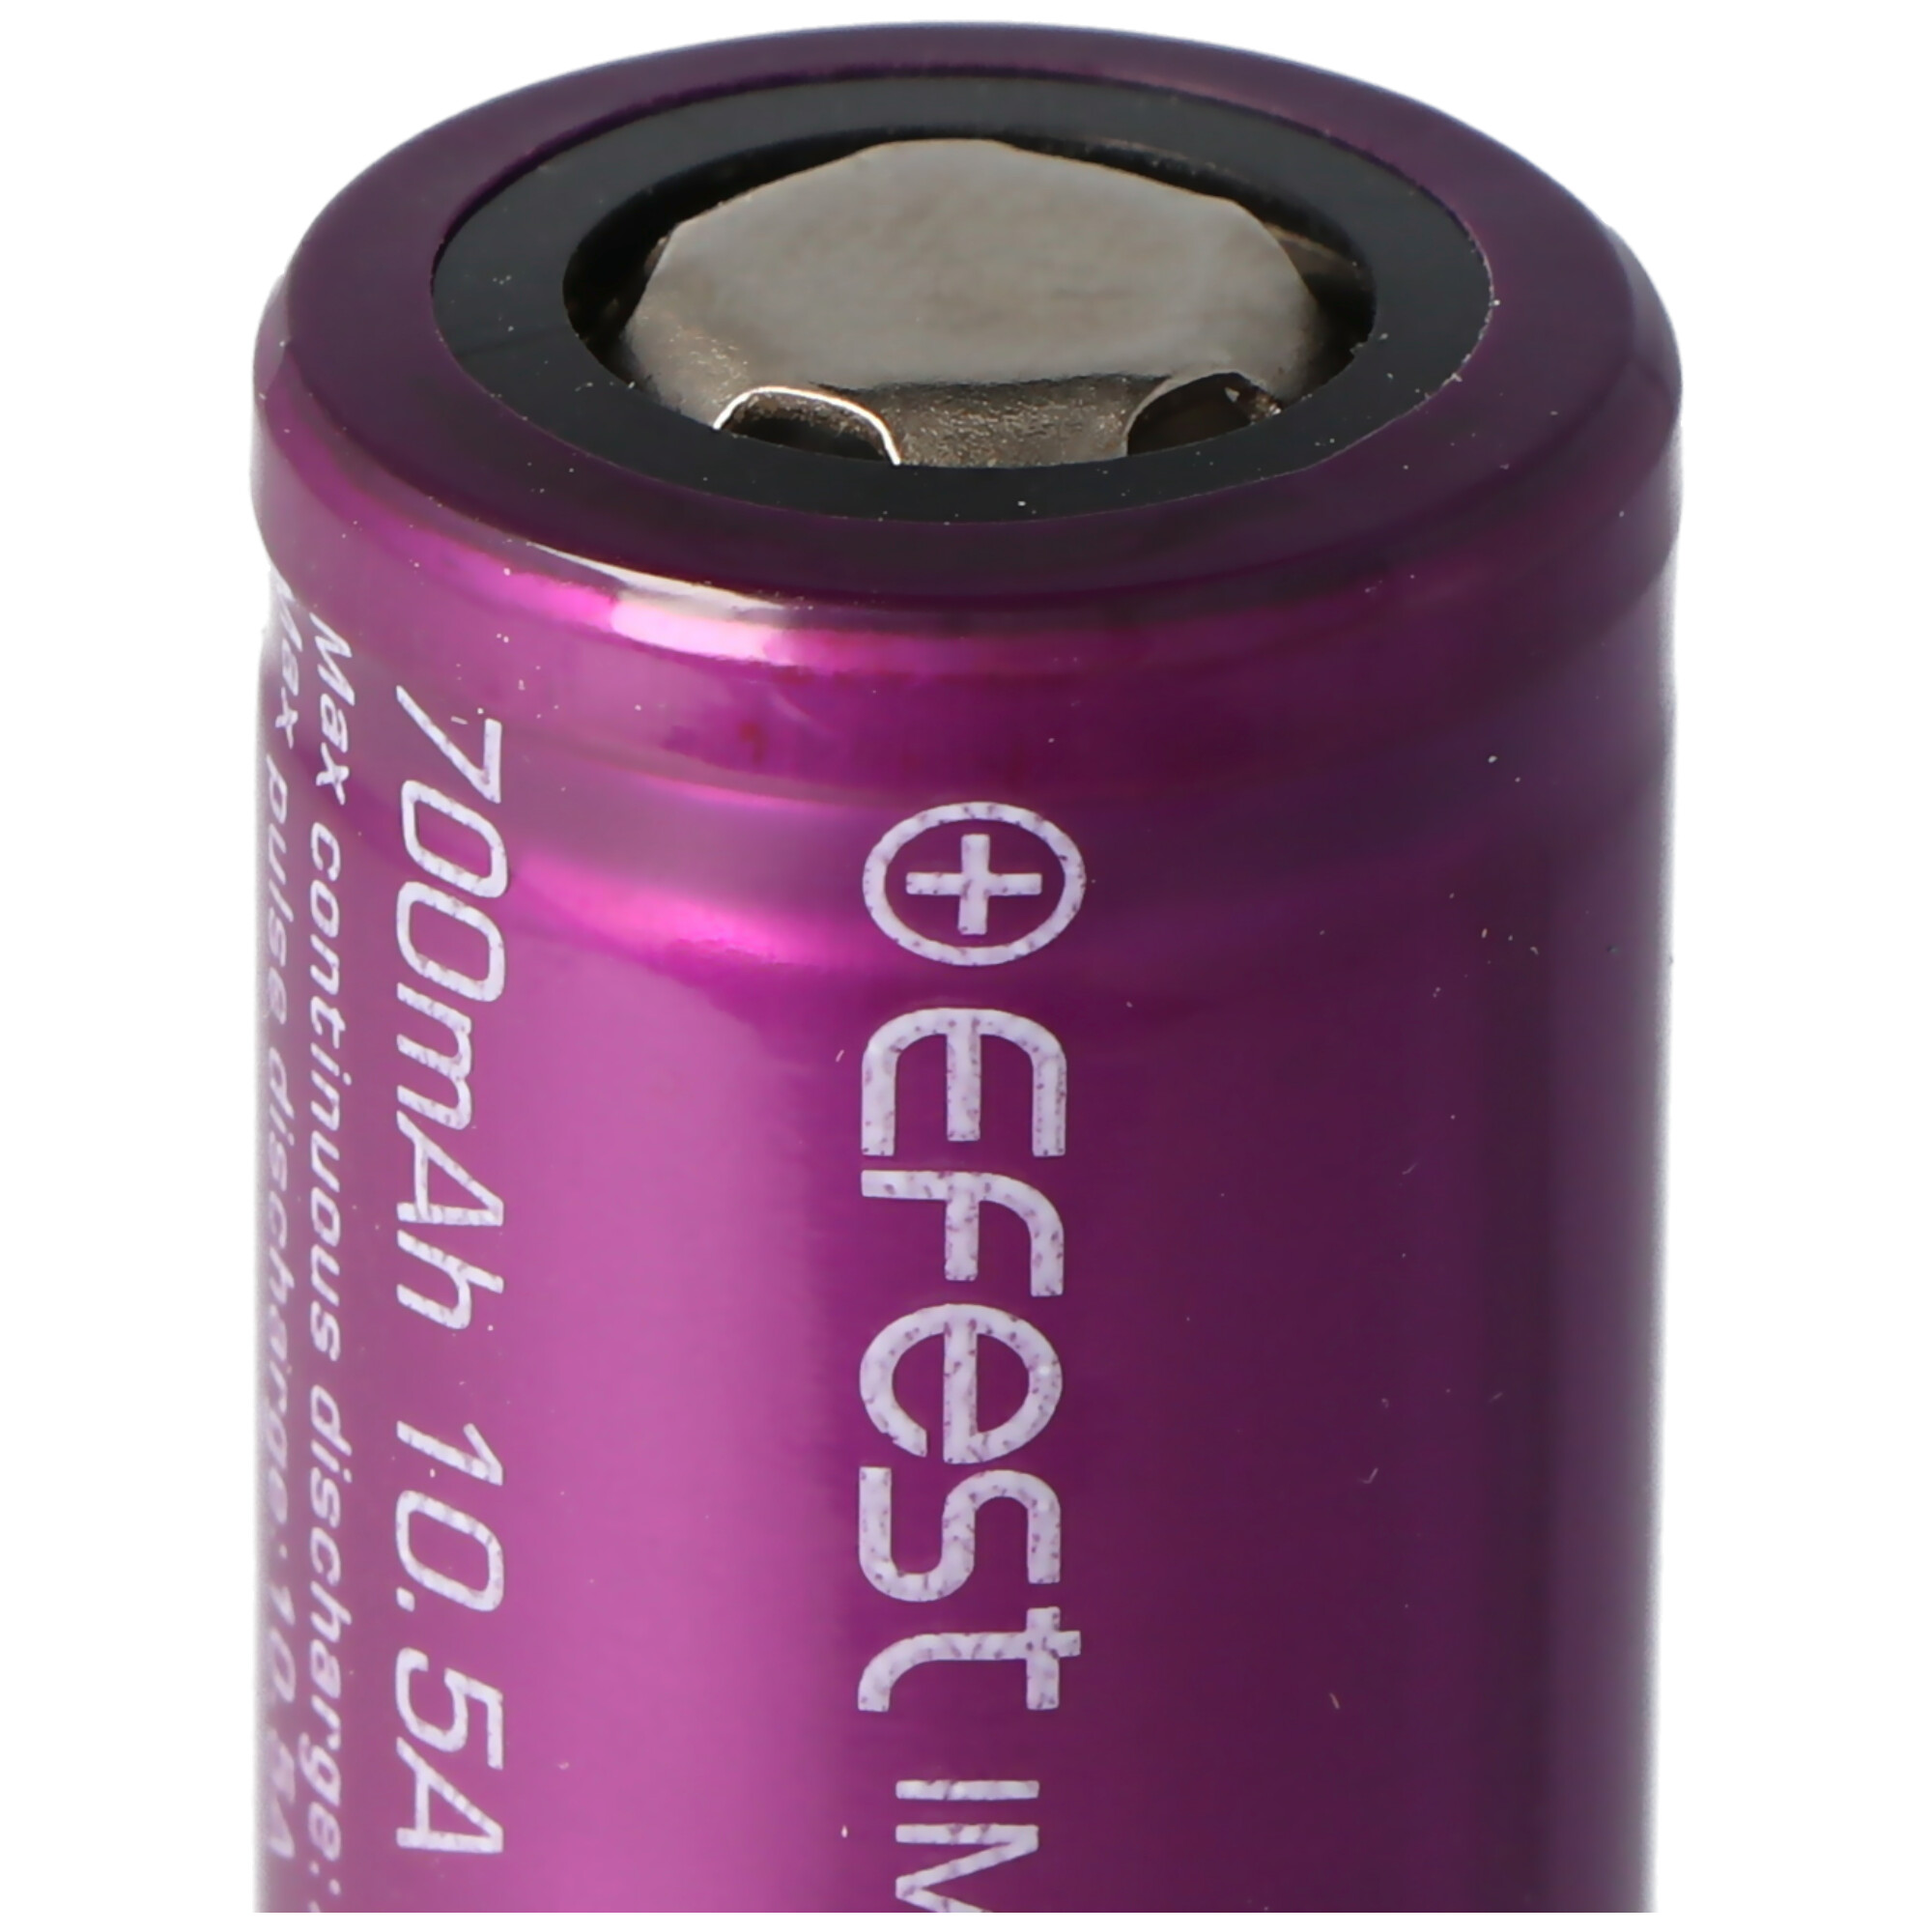 EFEST Purple mAh 700 (Pluspol Li-Ion-Akku 700mAh IMR18350 Li-Ion Akku, - flach) 3,7V - Lithium-Ionen